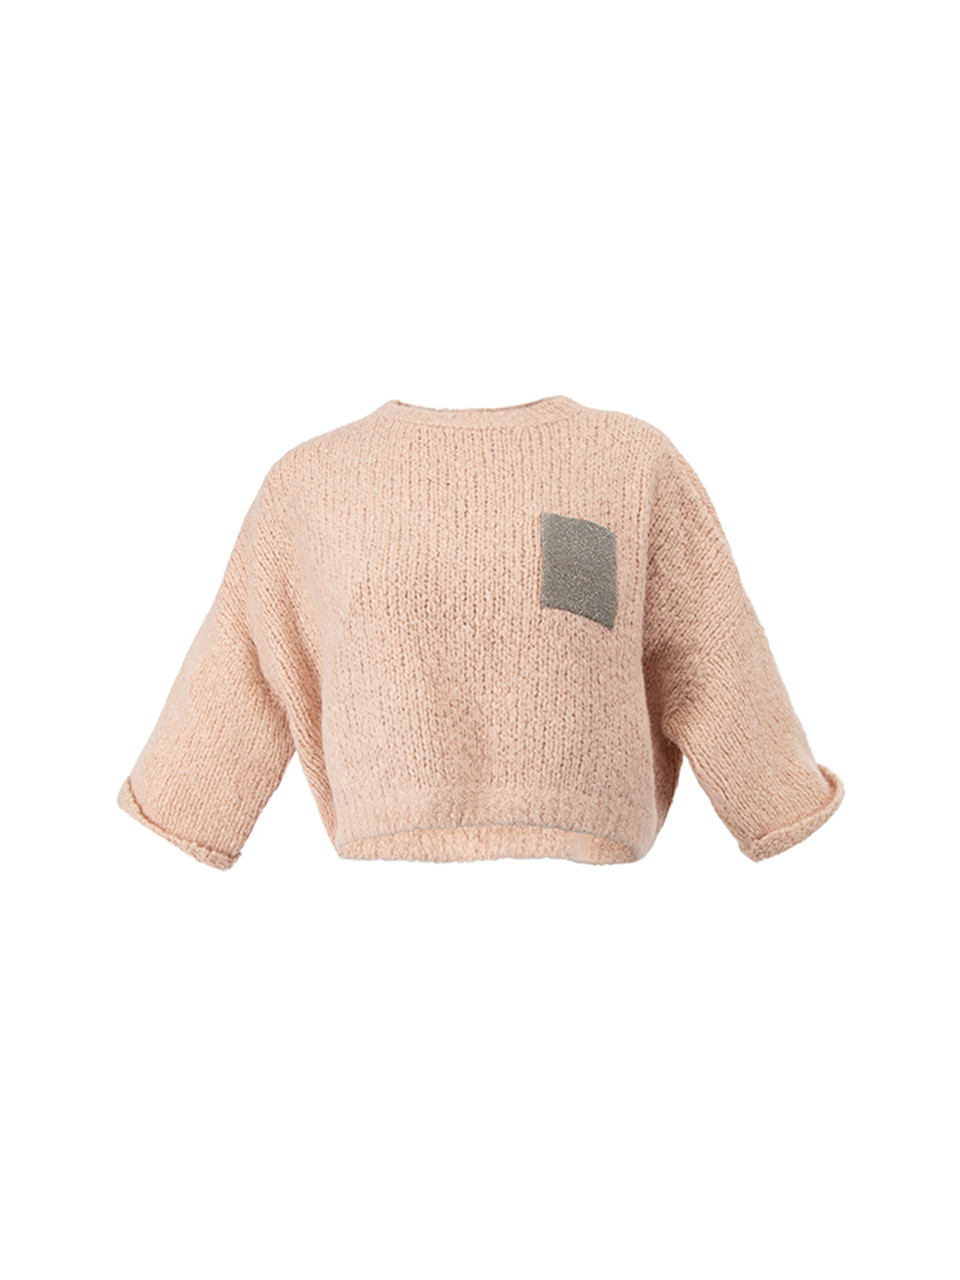 Brunnello Cucinelli Cashmere Pink Alpaca Monili Pocket Sweater